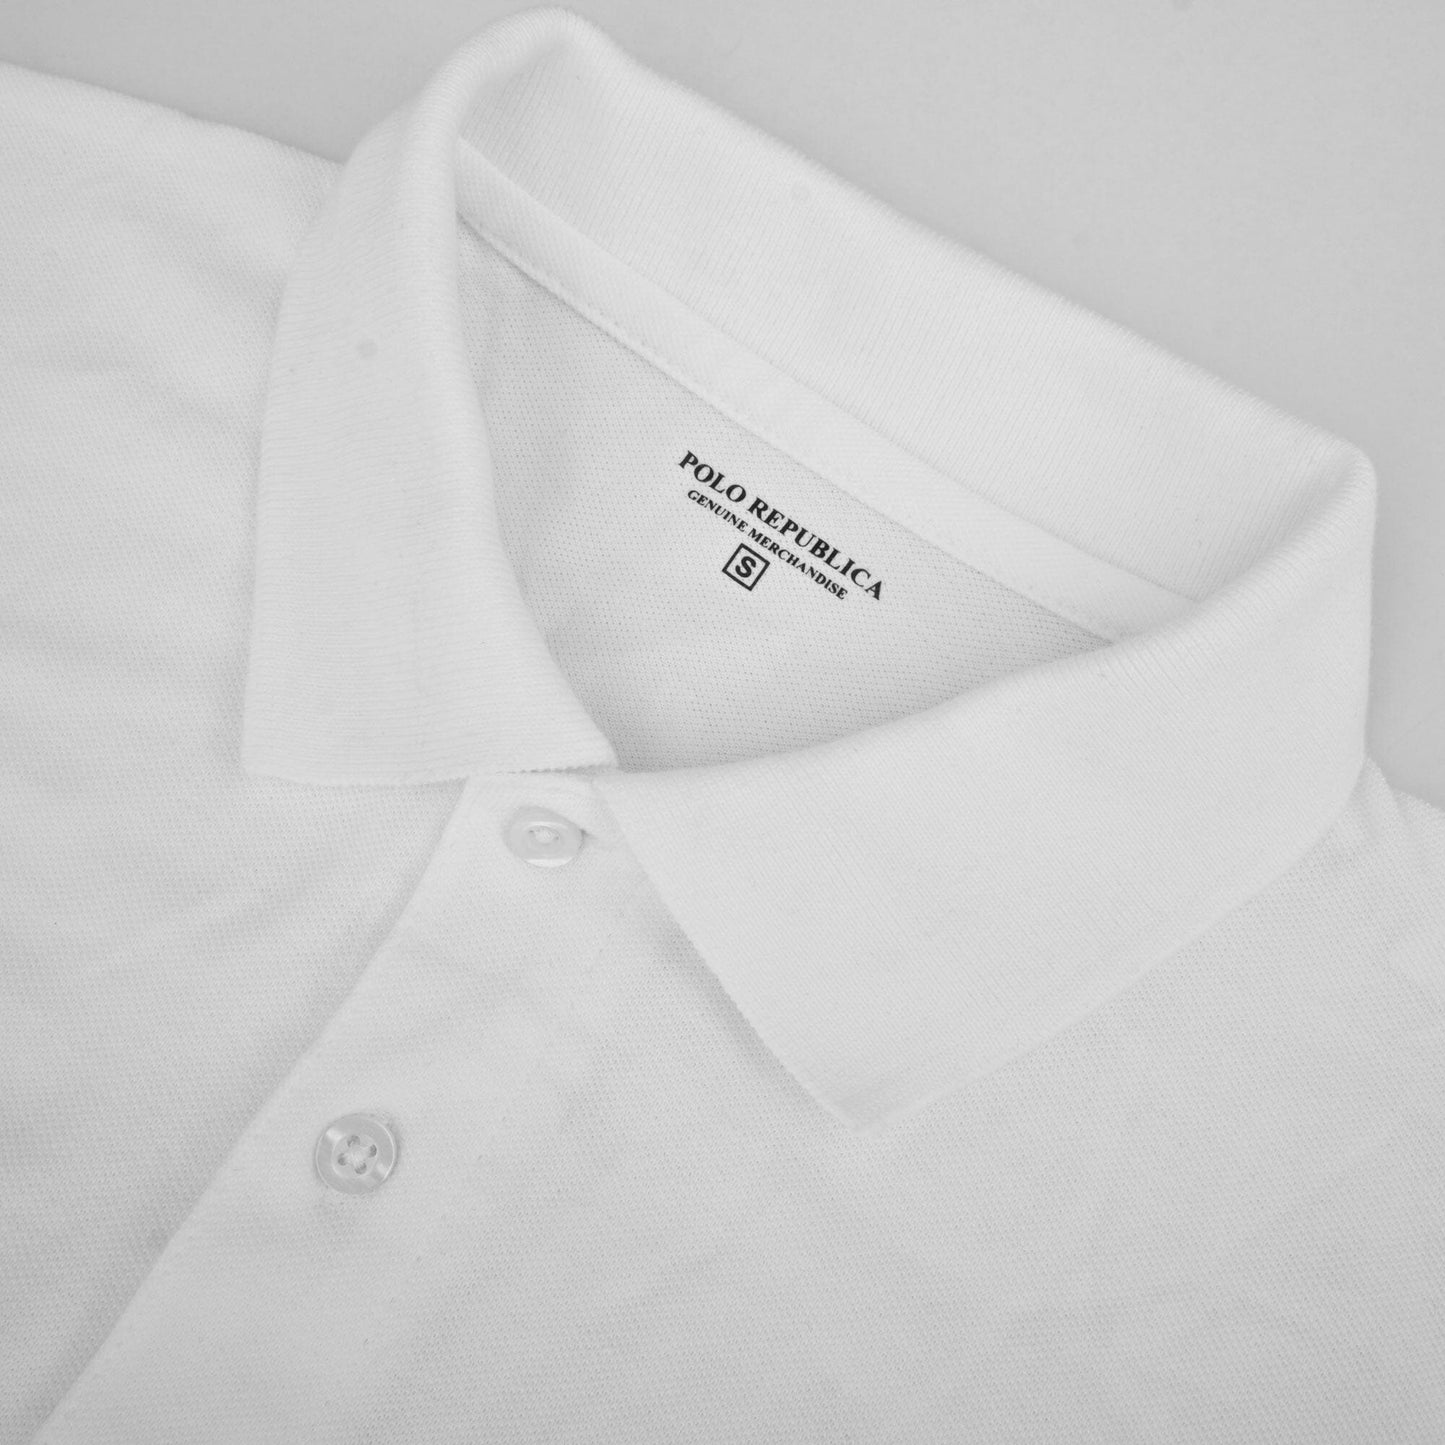 Polo Republica Men's Twin Horse Rider & Crest 3 Embroidered Short Sleeve Polo Shirt Men's Polo Shirt Polo Republica 